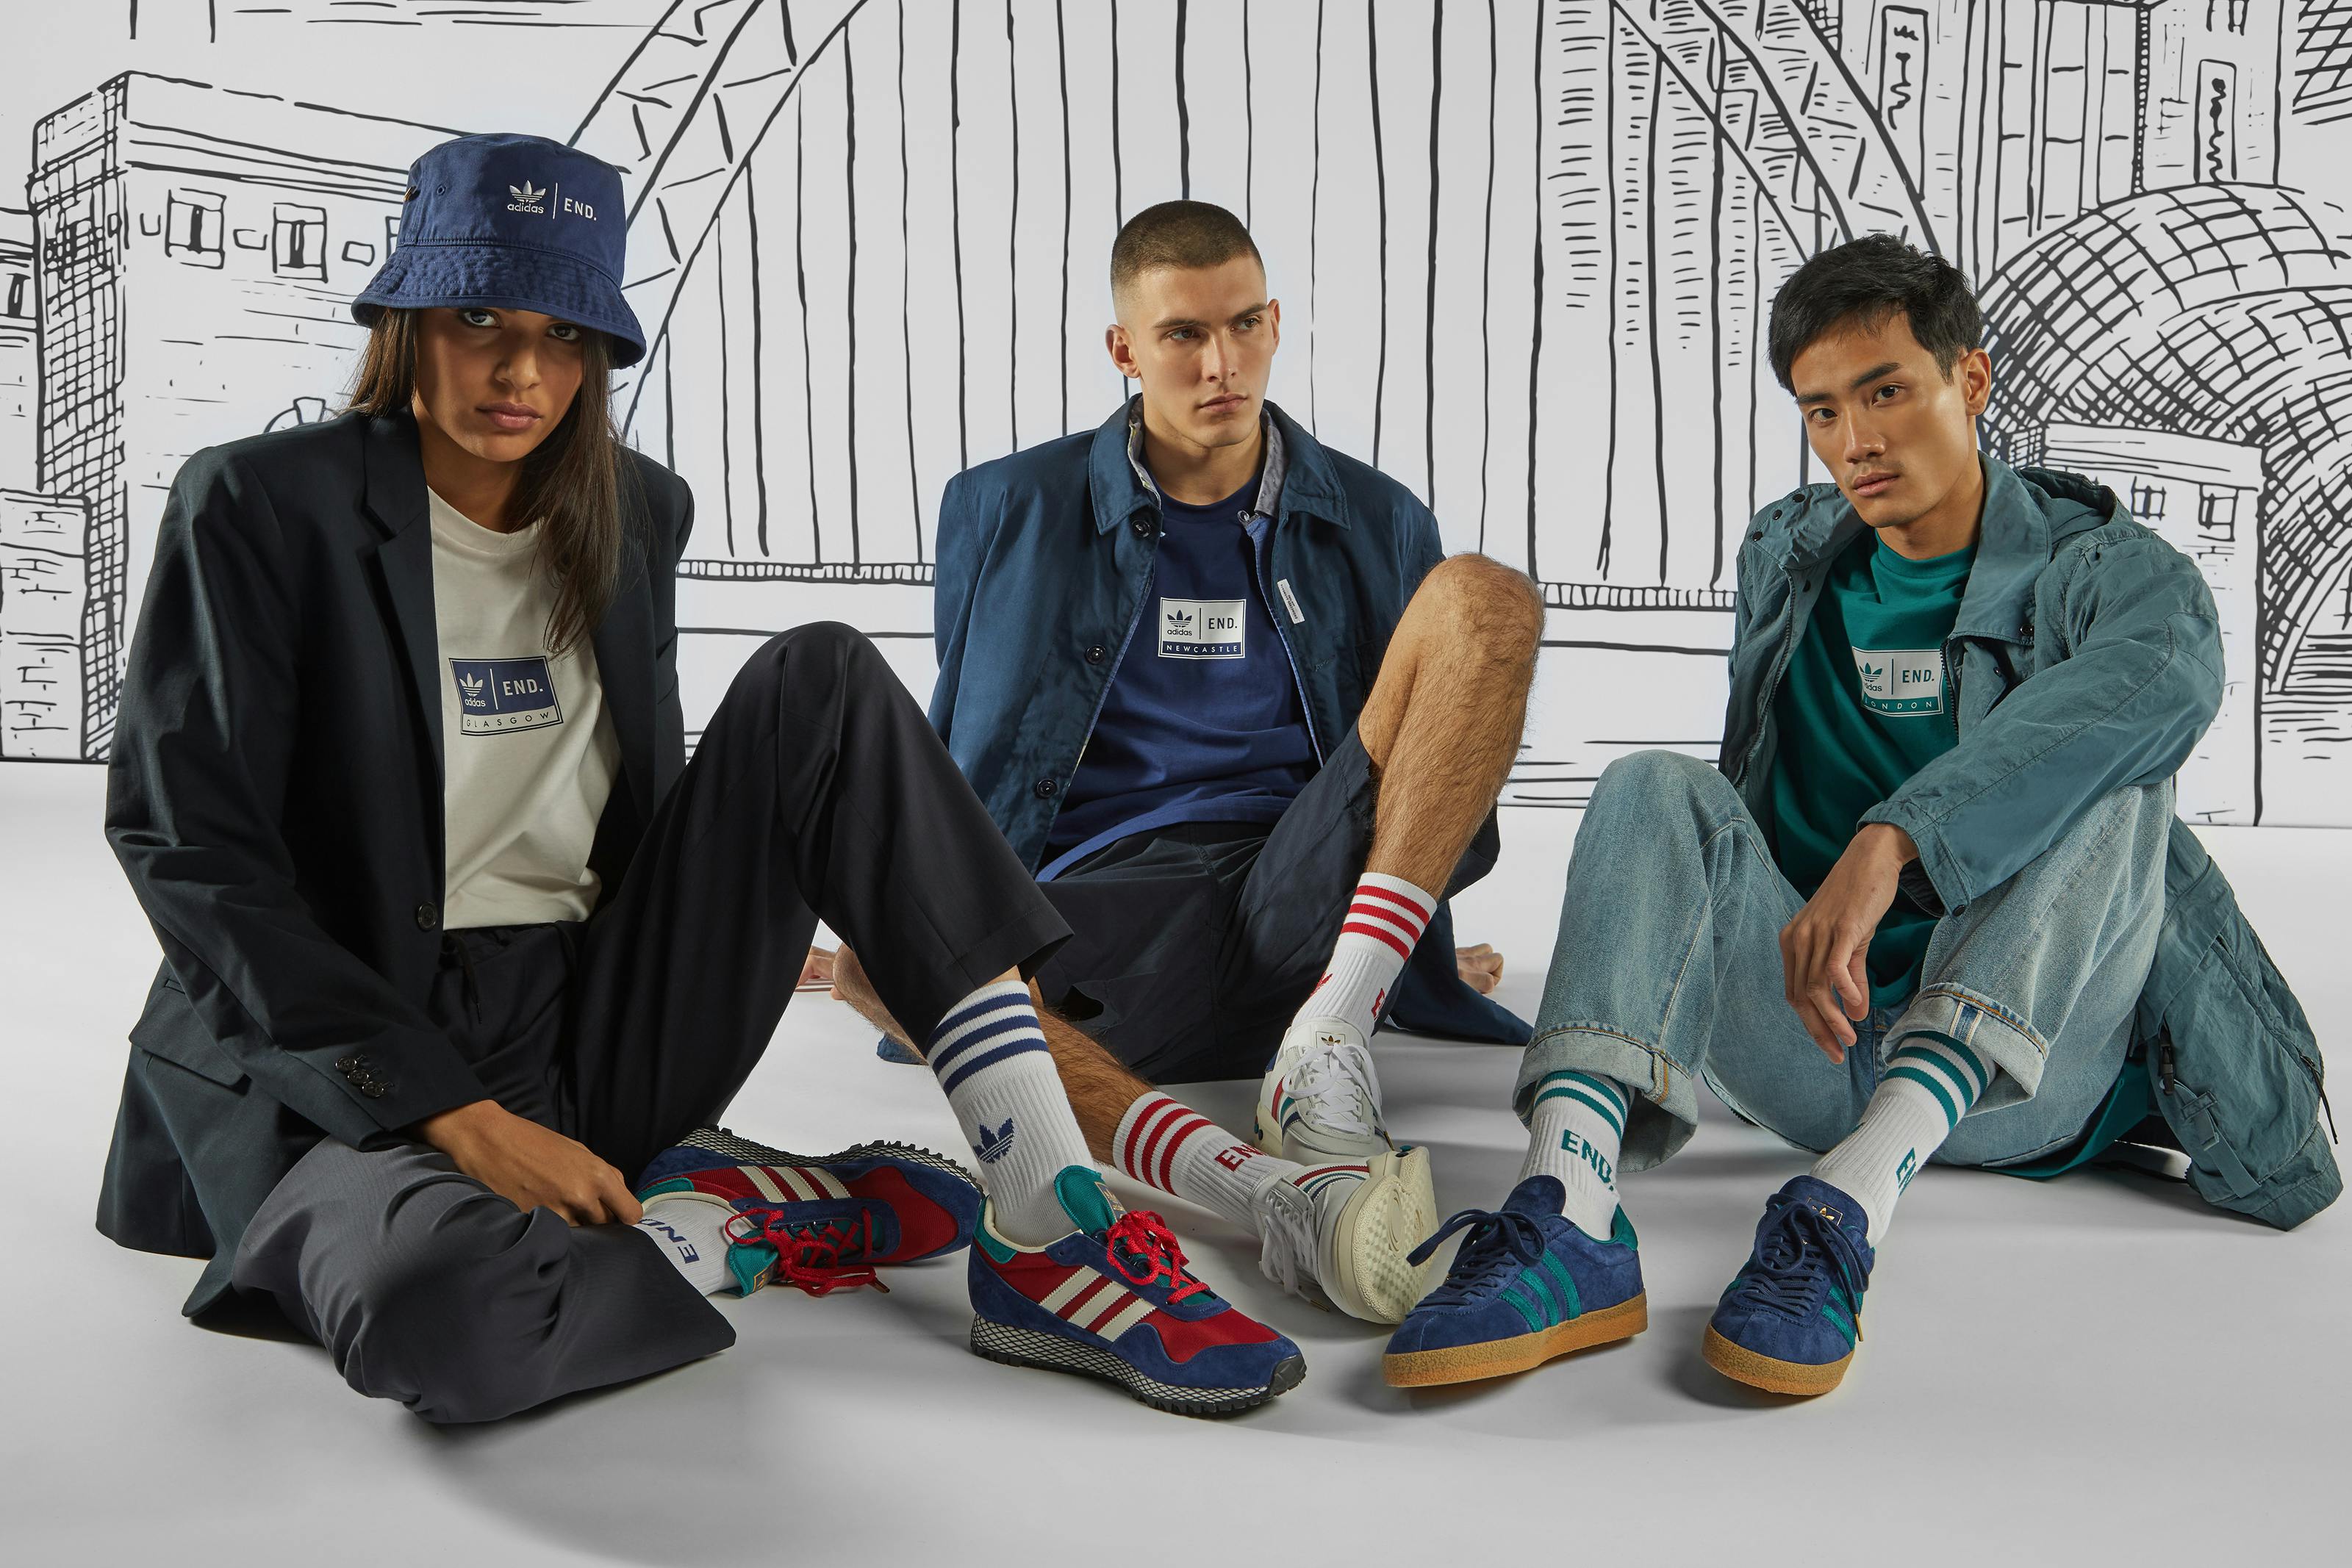 Адидас певец. Адидас специаль коллаборации. Коллаборации adidas одежда. Adidas Originals одежда. Adidas Mens.